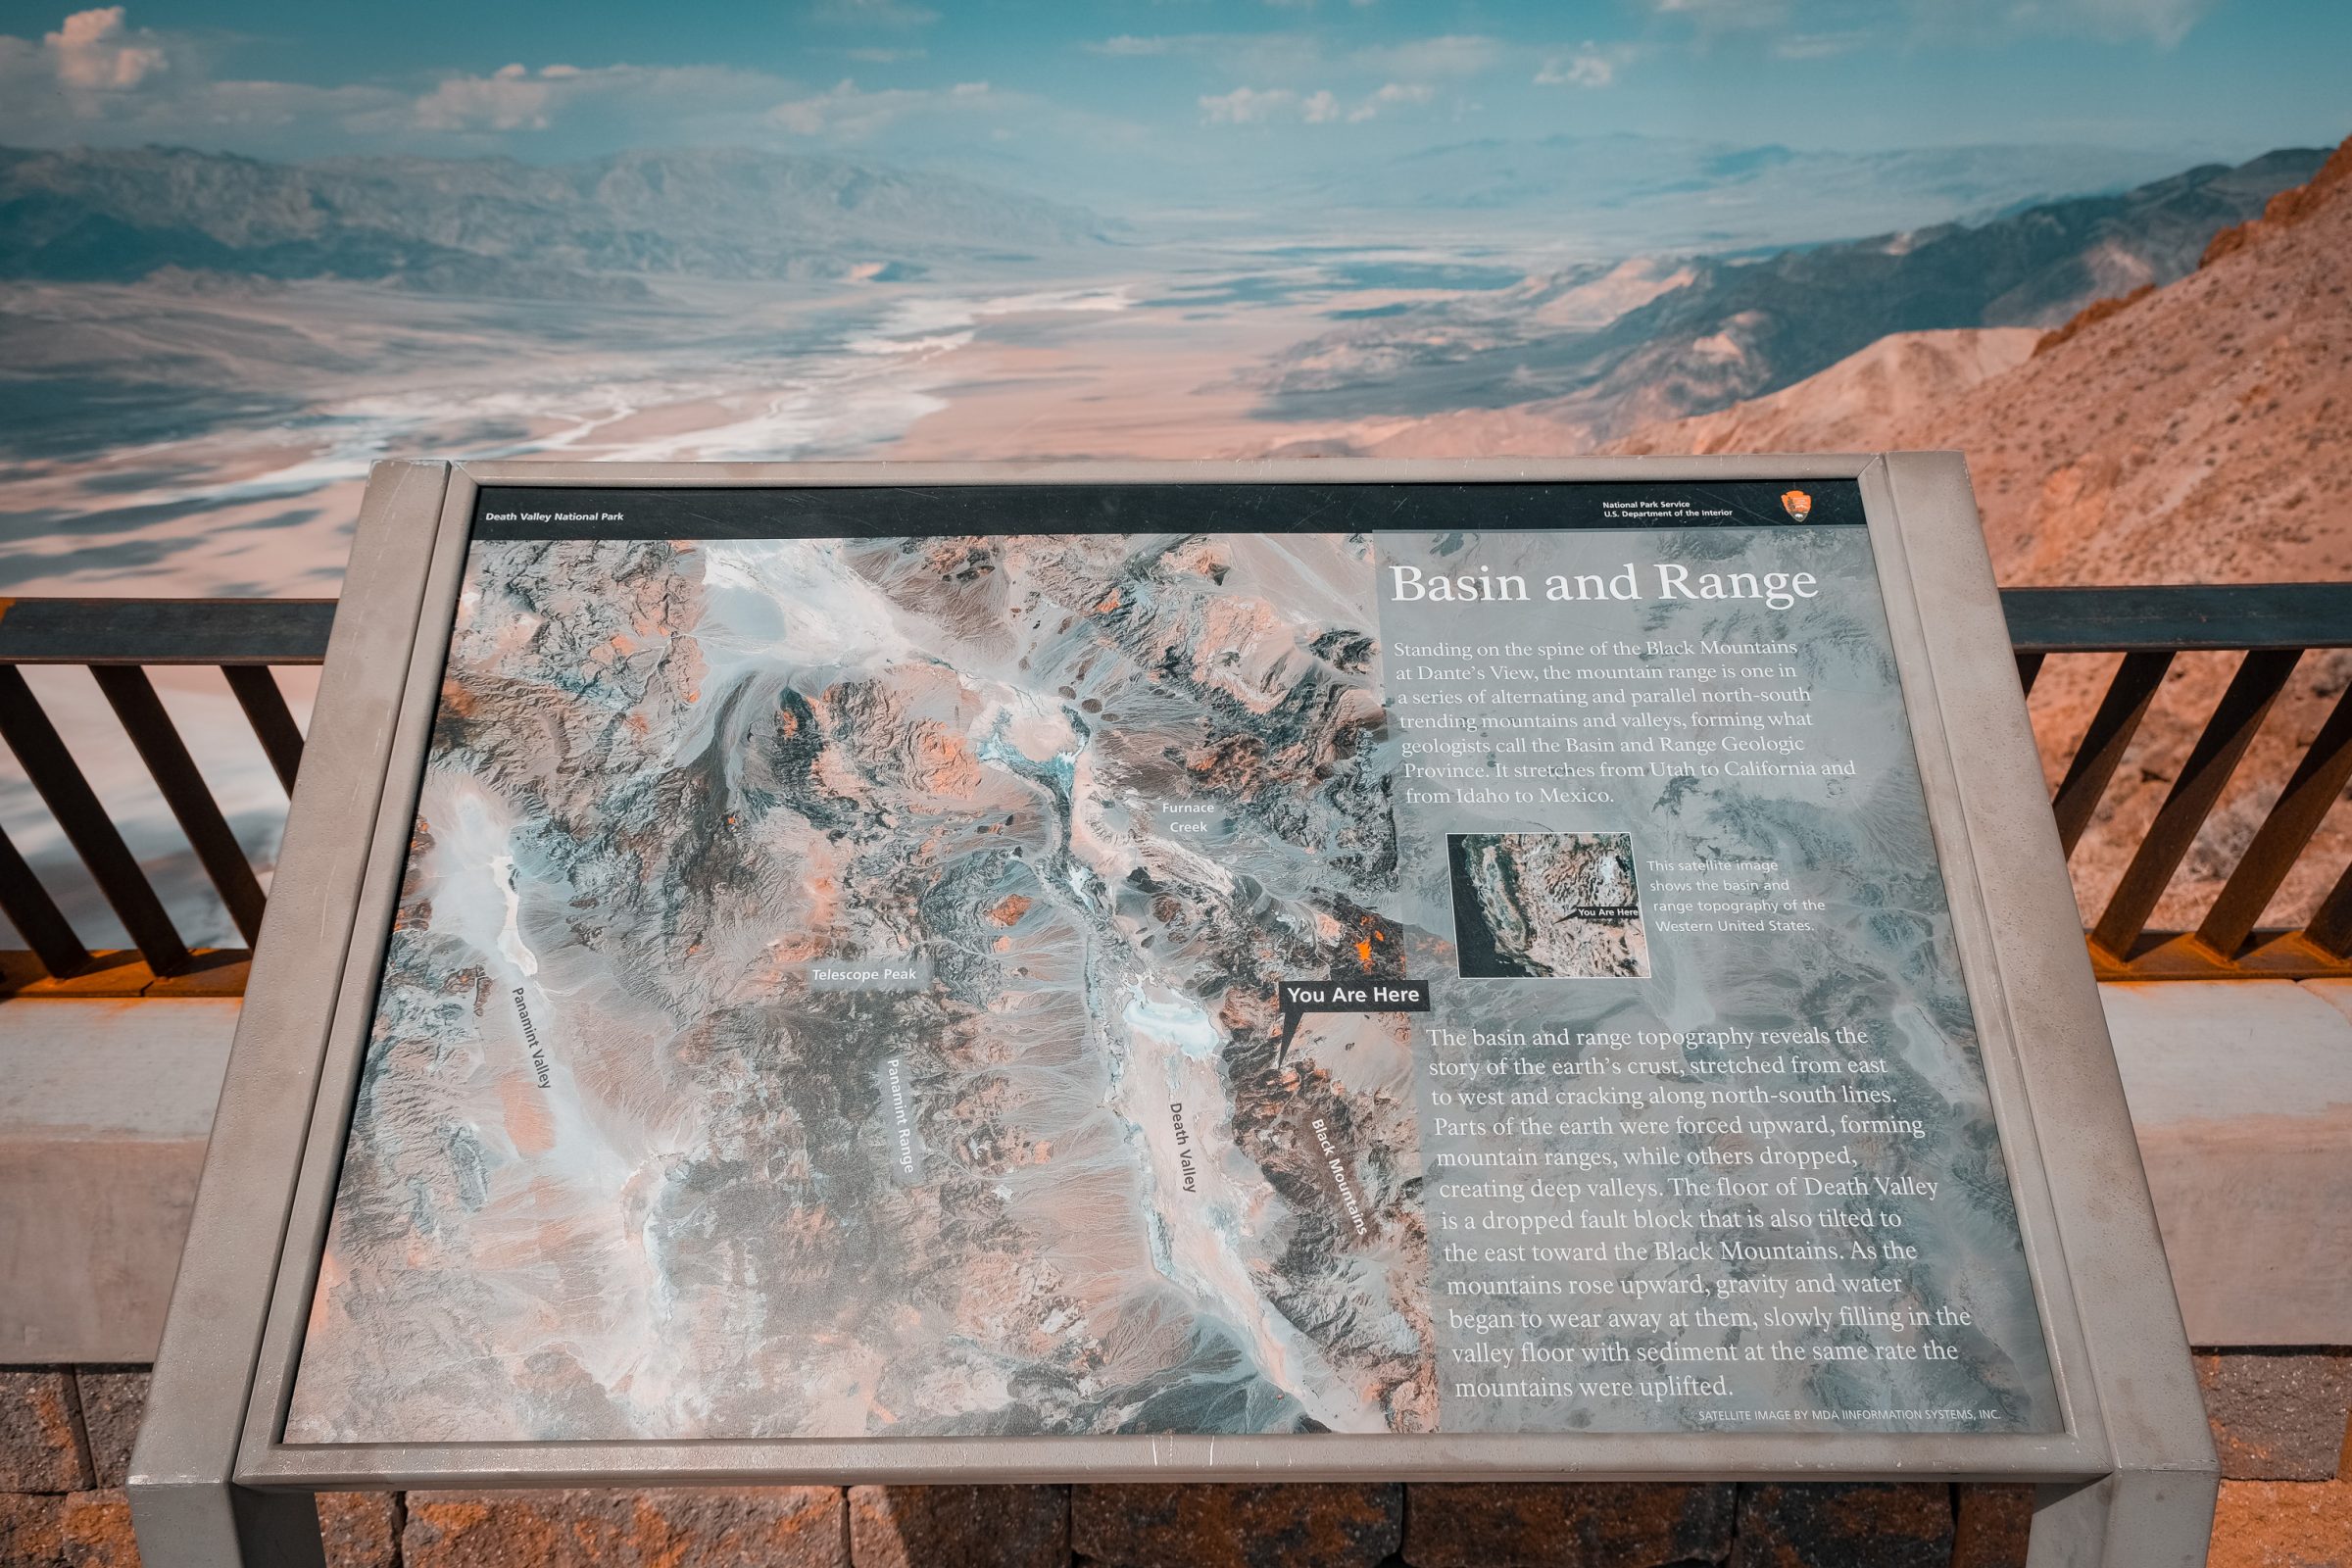 Dante's View Information Board nella Death Valley. Clicca per ingrandire.